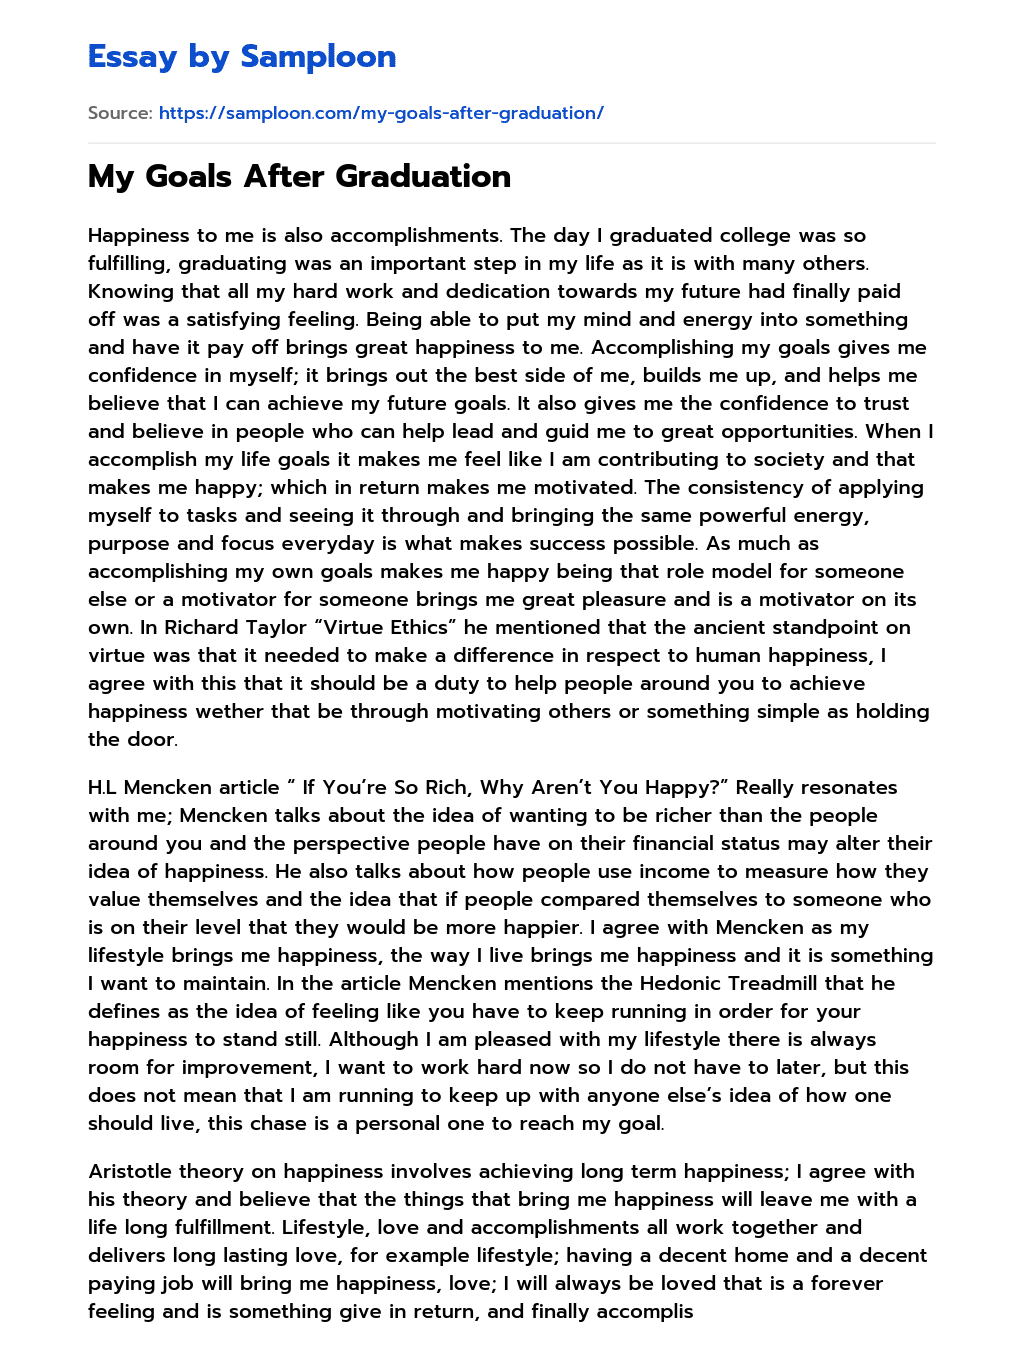 My Goals After Graduation essay